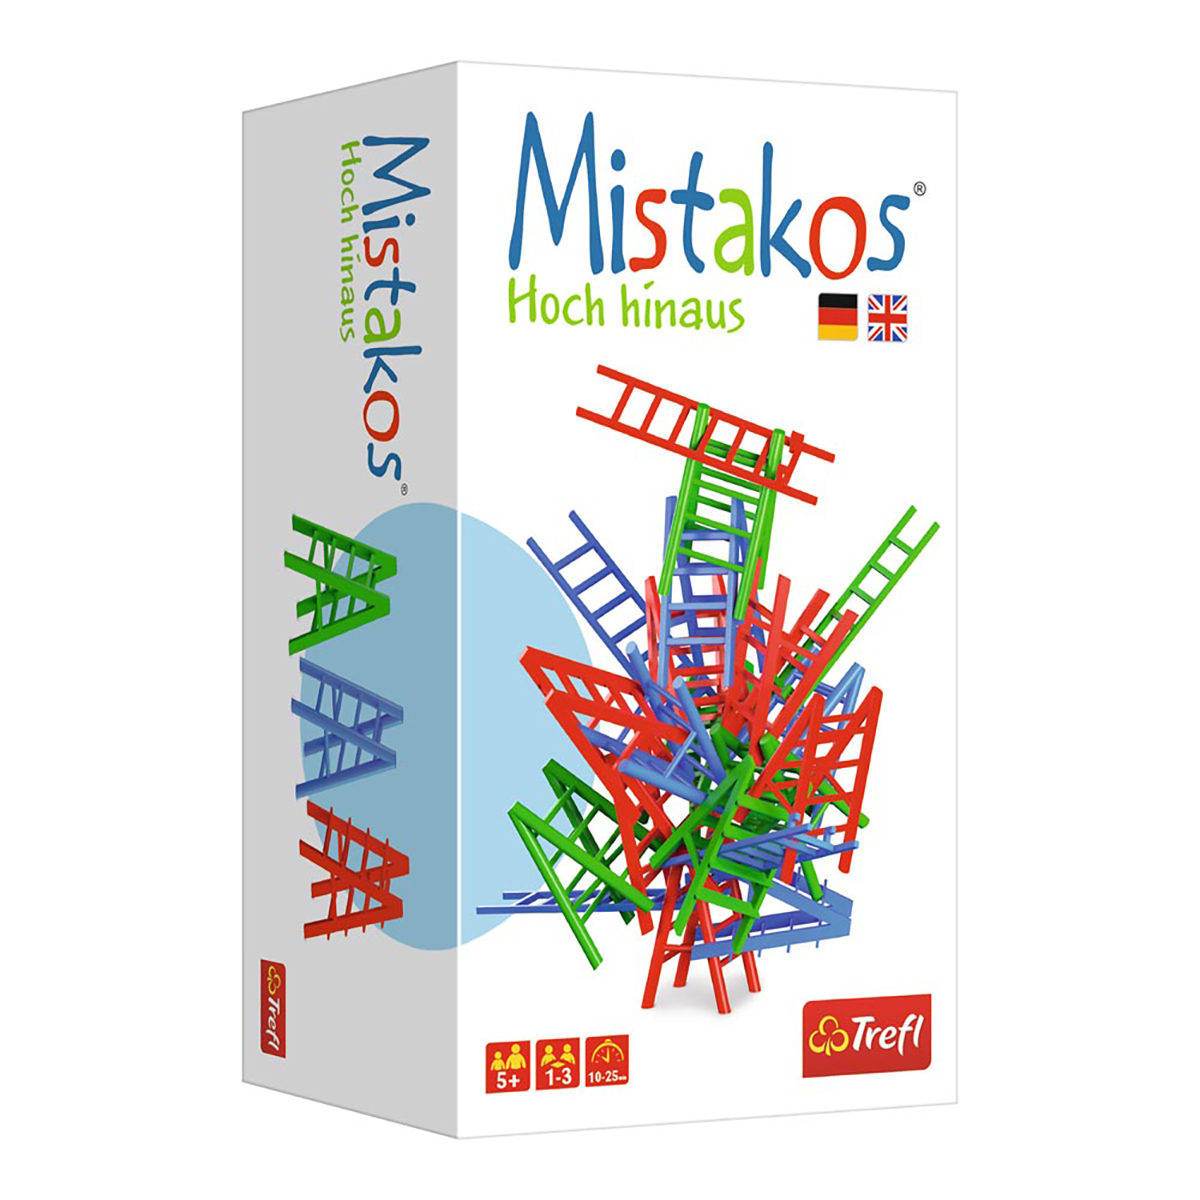 TREFL Spiel - Mistakos - 3 Spieler Hoch Gesellschaftsspiel hinaus 